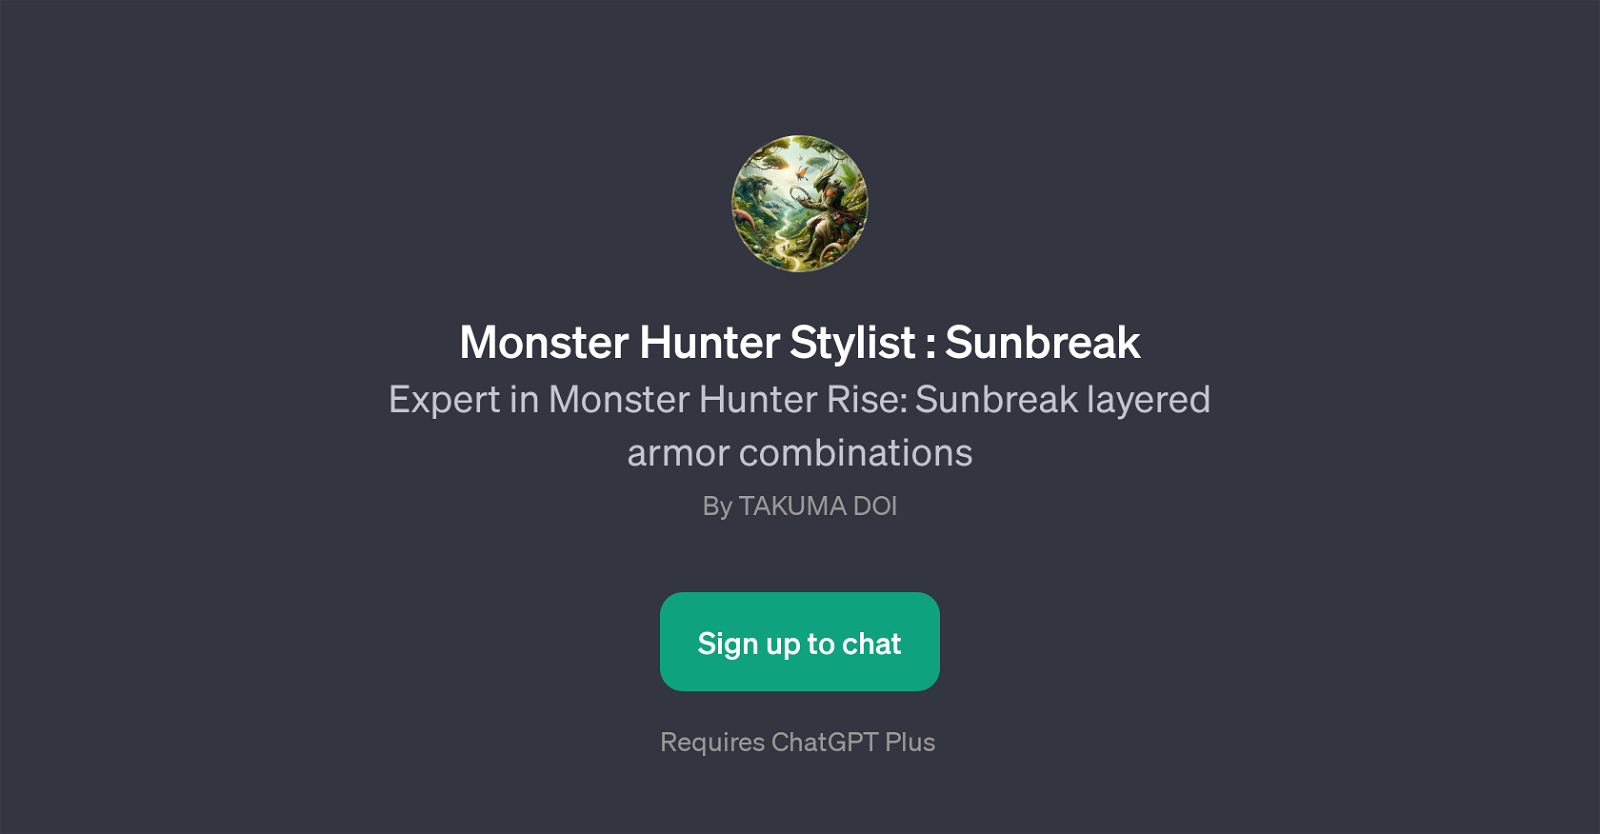 Monster Hunter Stylist: Sunbreak website